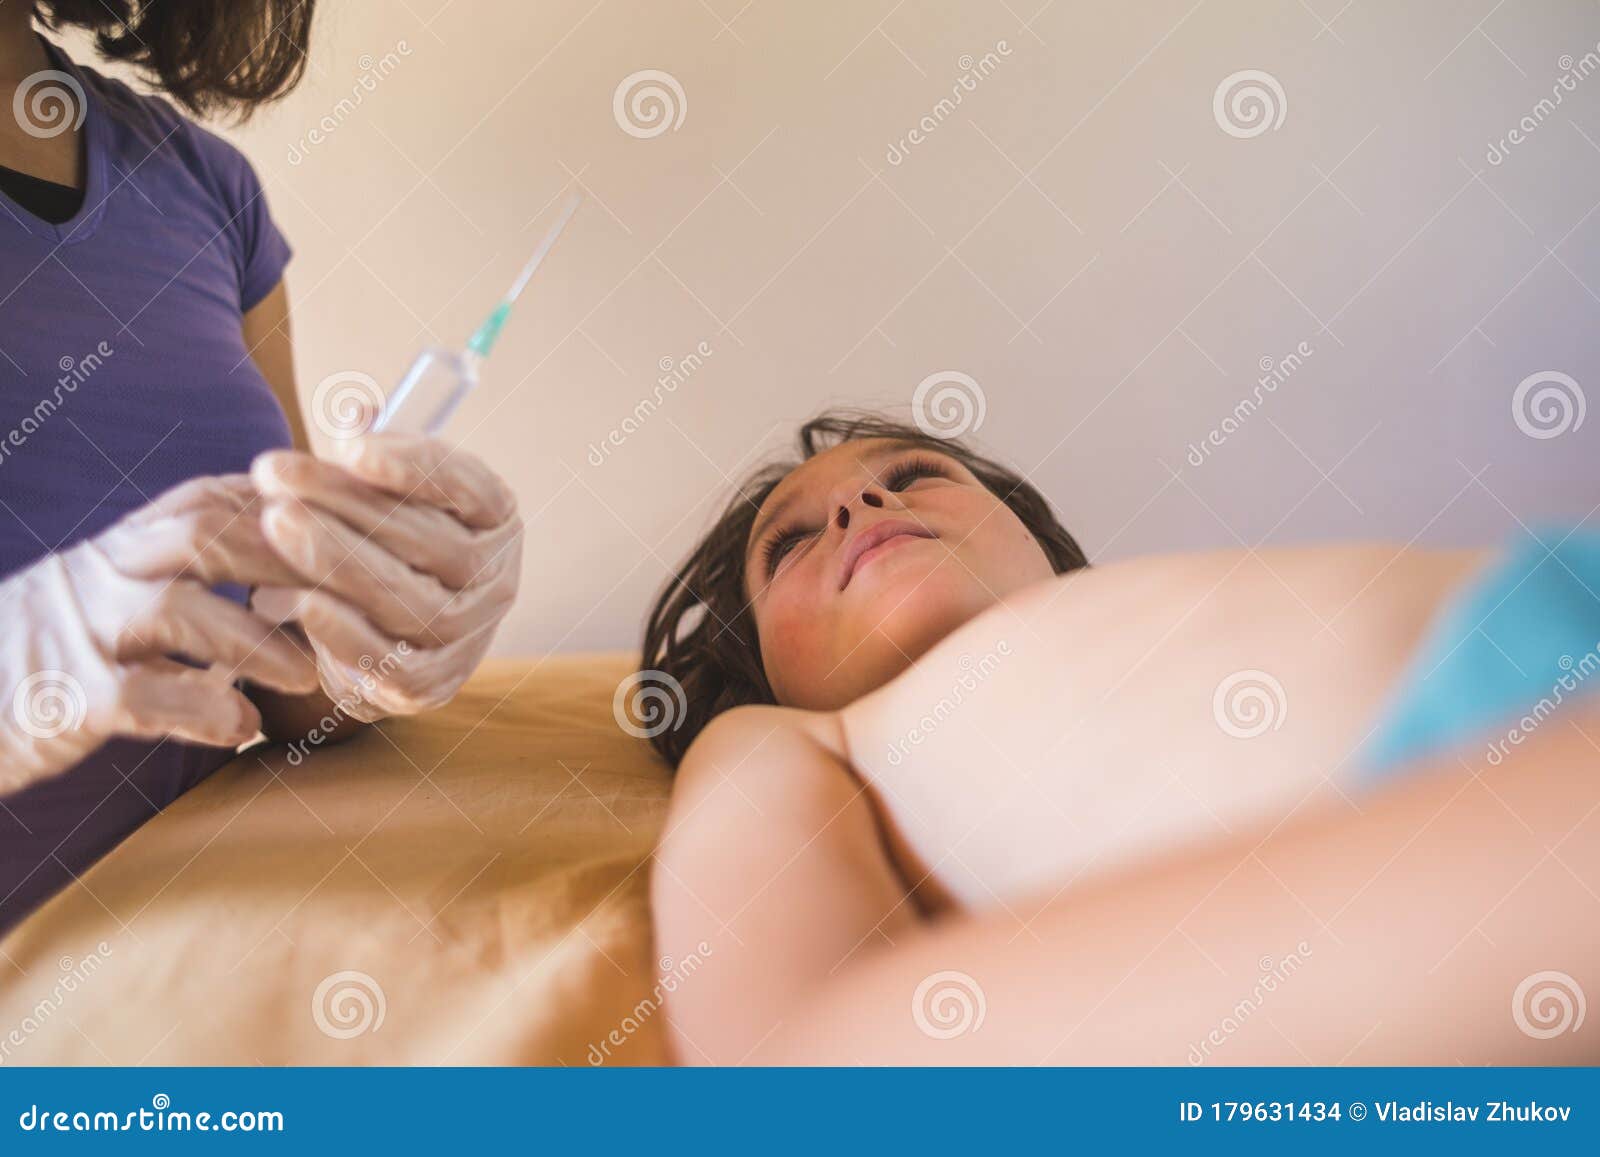 как делают уколы в жопу женщинам фото 44